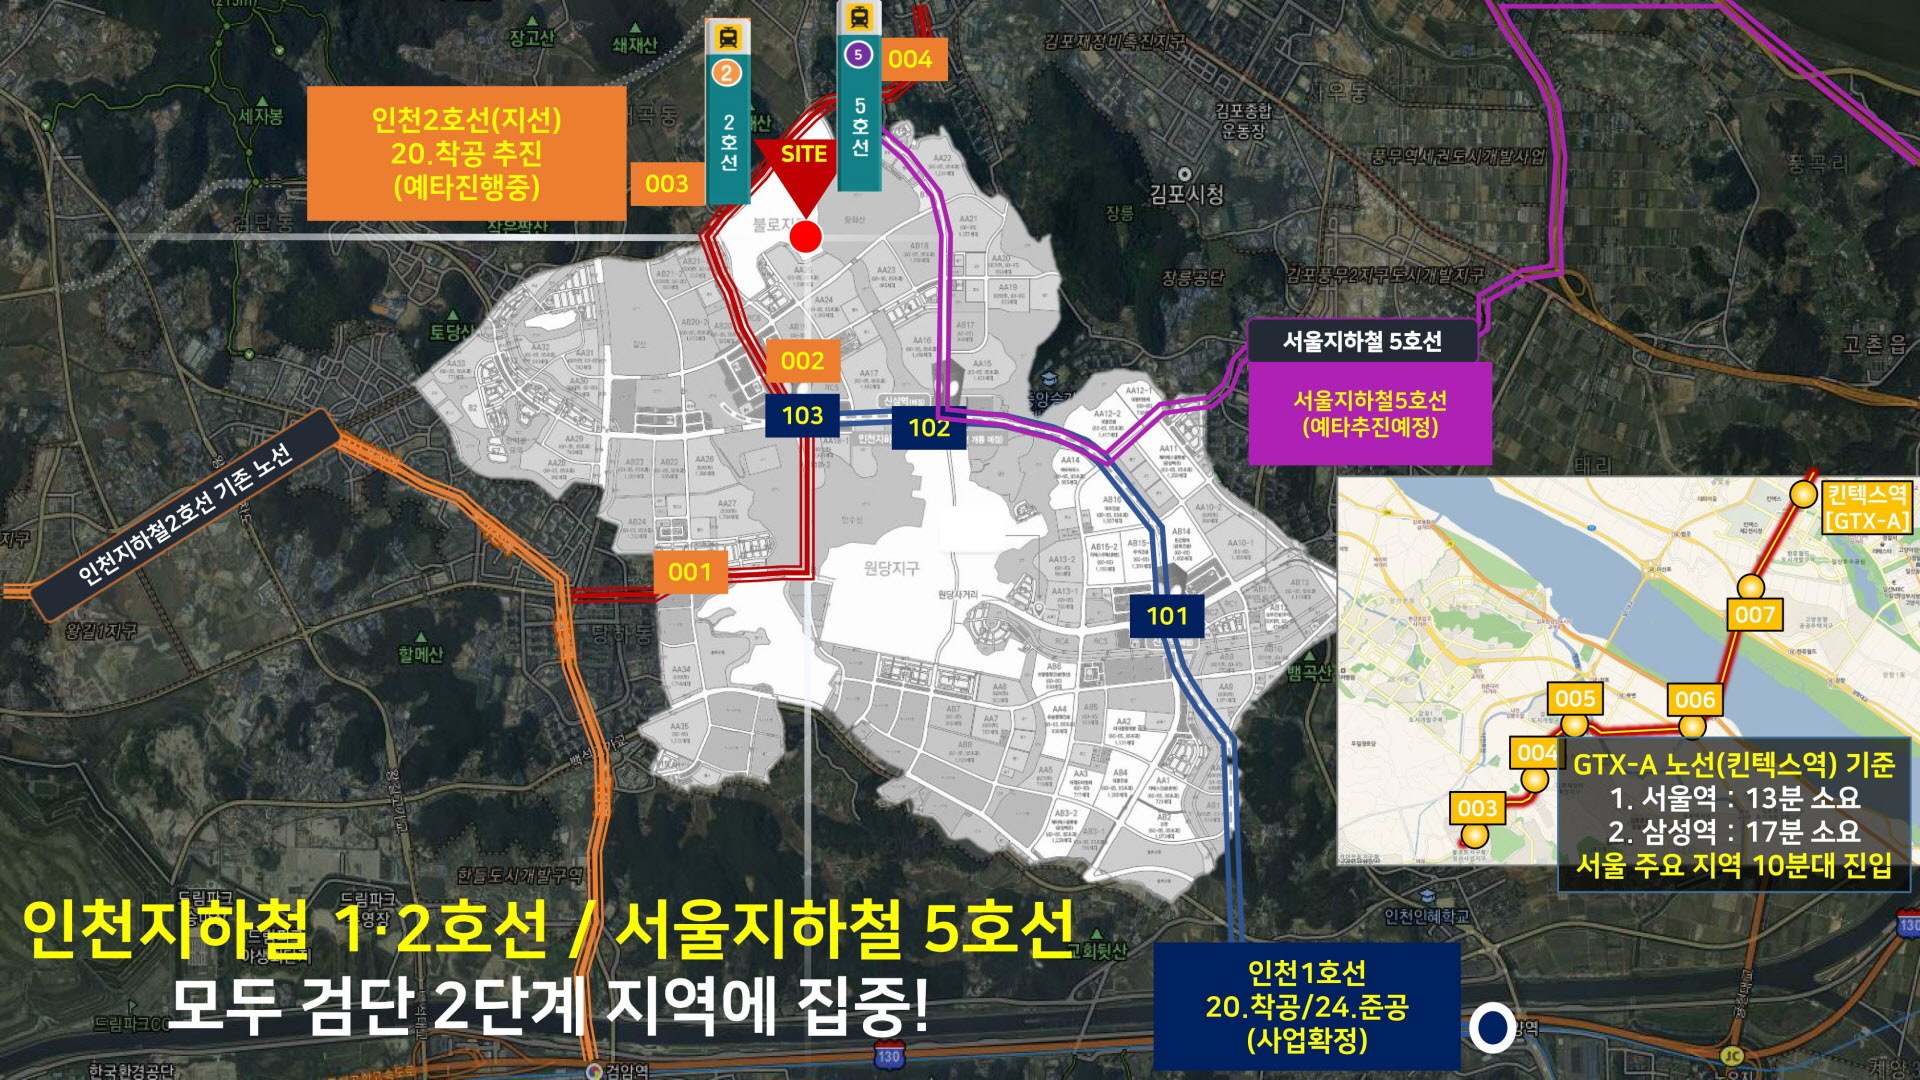 인천 지하철 2호선 및 5호선 타당성 검사